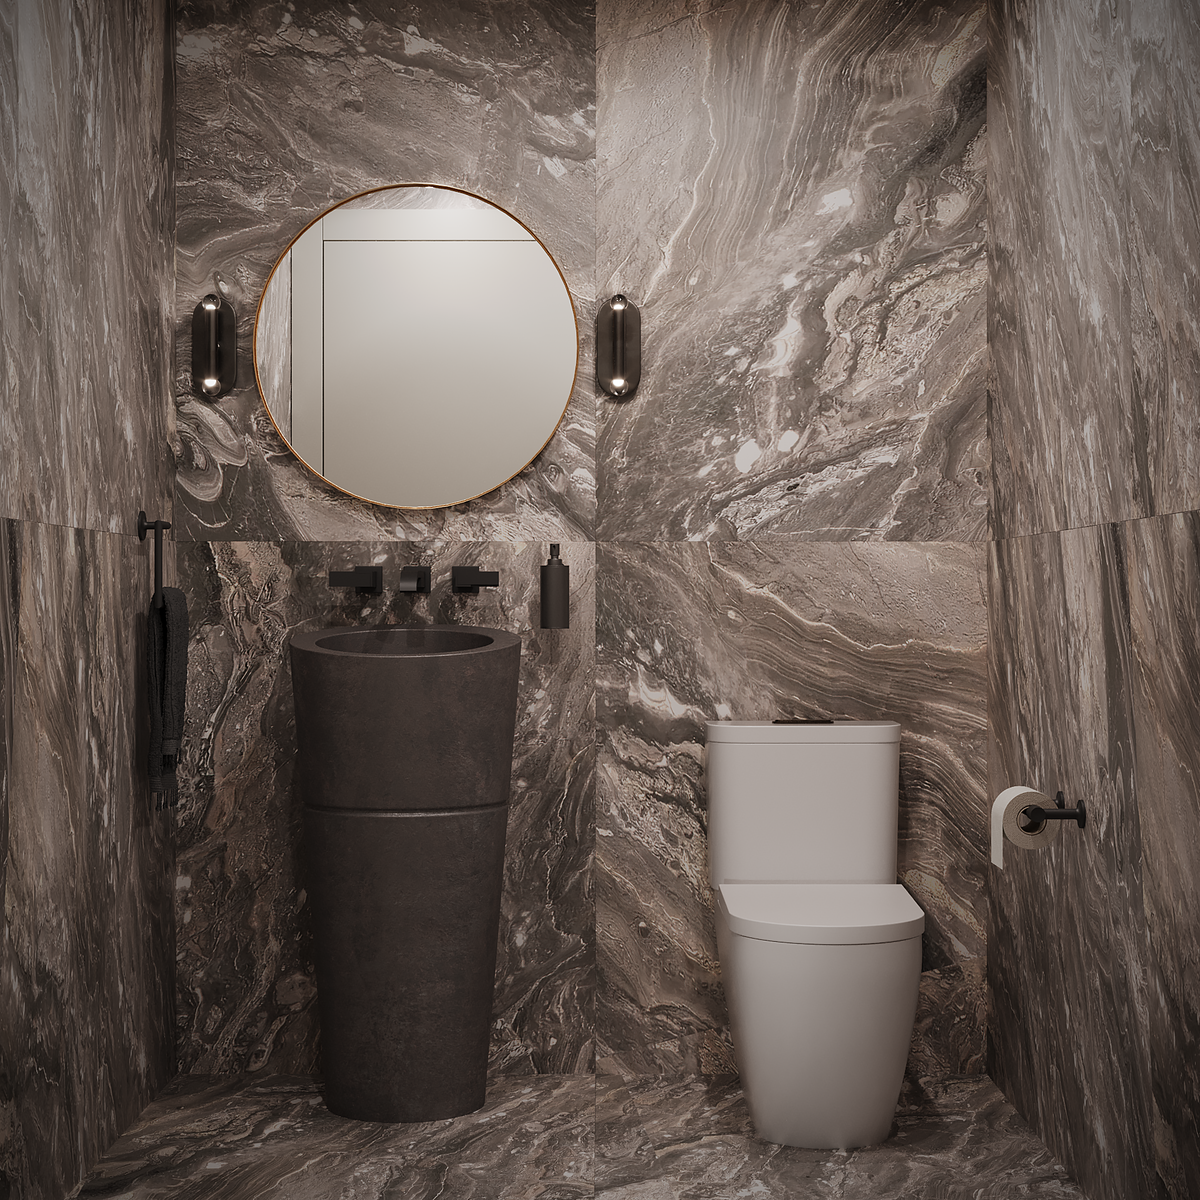 Ormsby - The Unoriginal Bathroom Co.